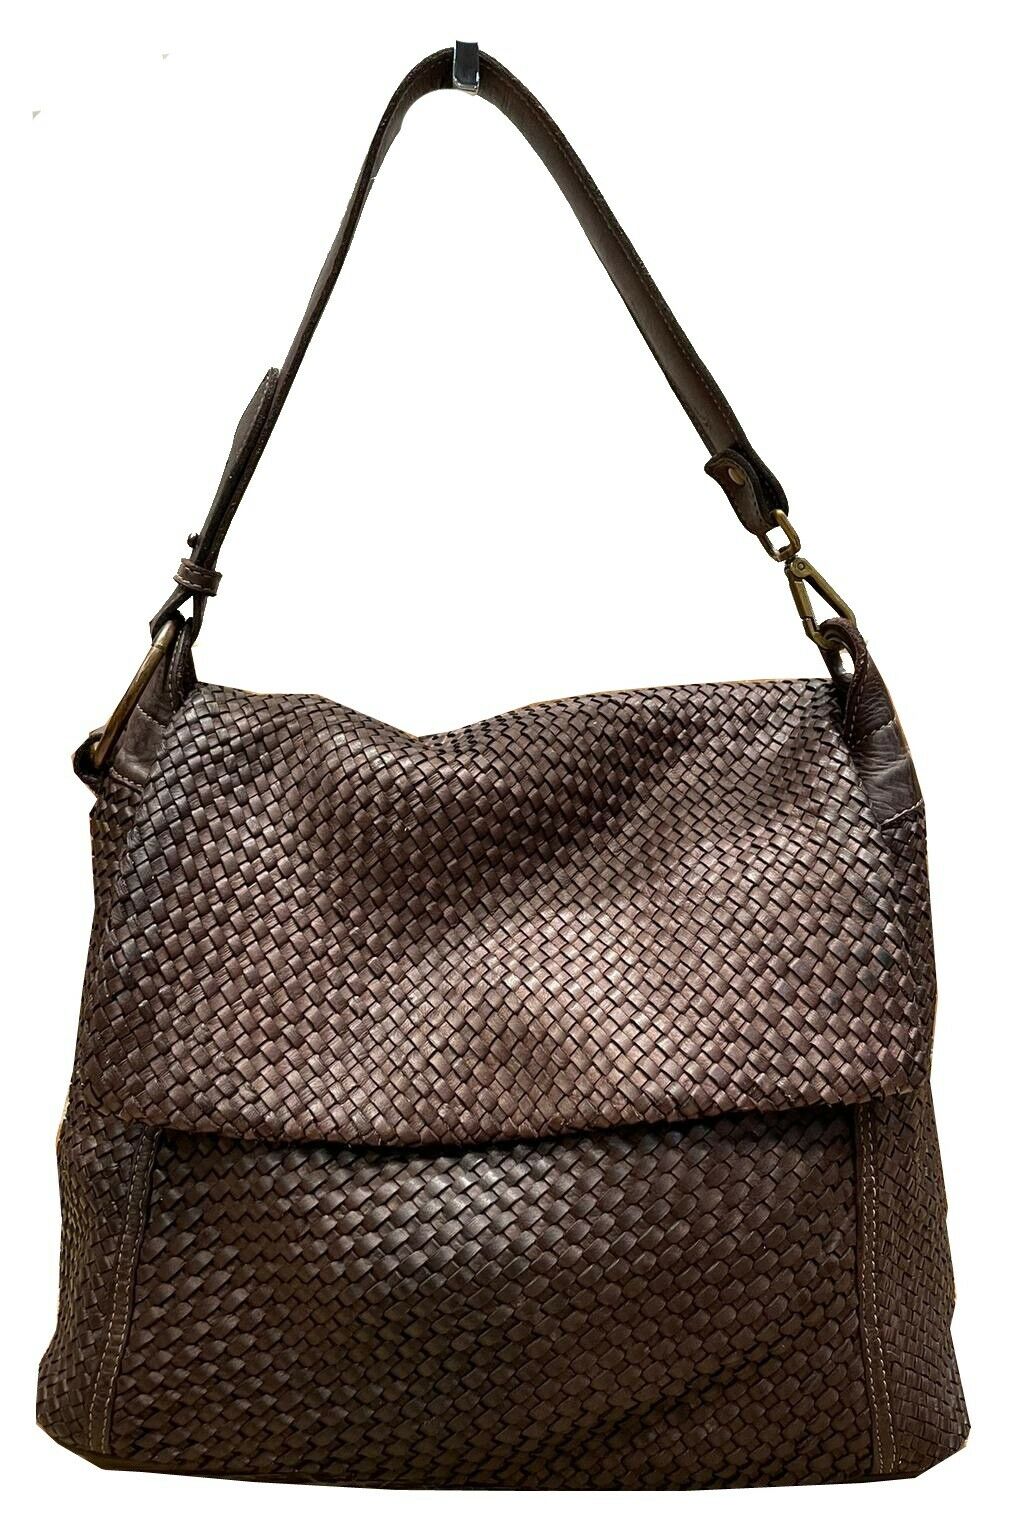 BZNA Bag Tarja Braun Italy Designer Messenger Damen Handtasche Schultertasche